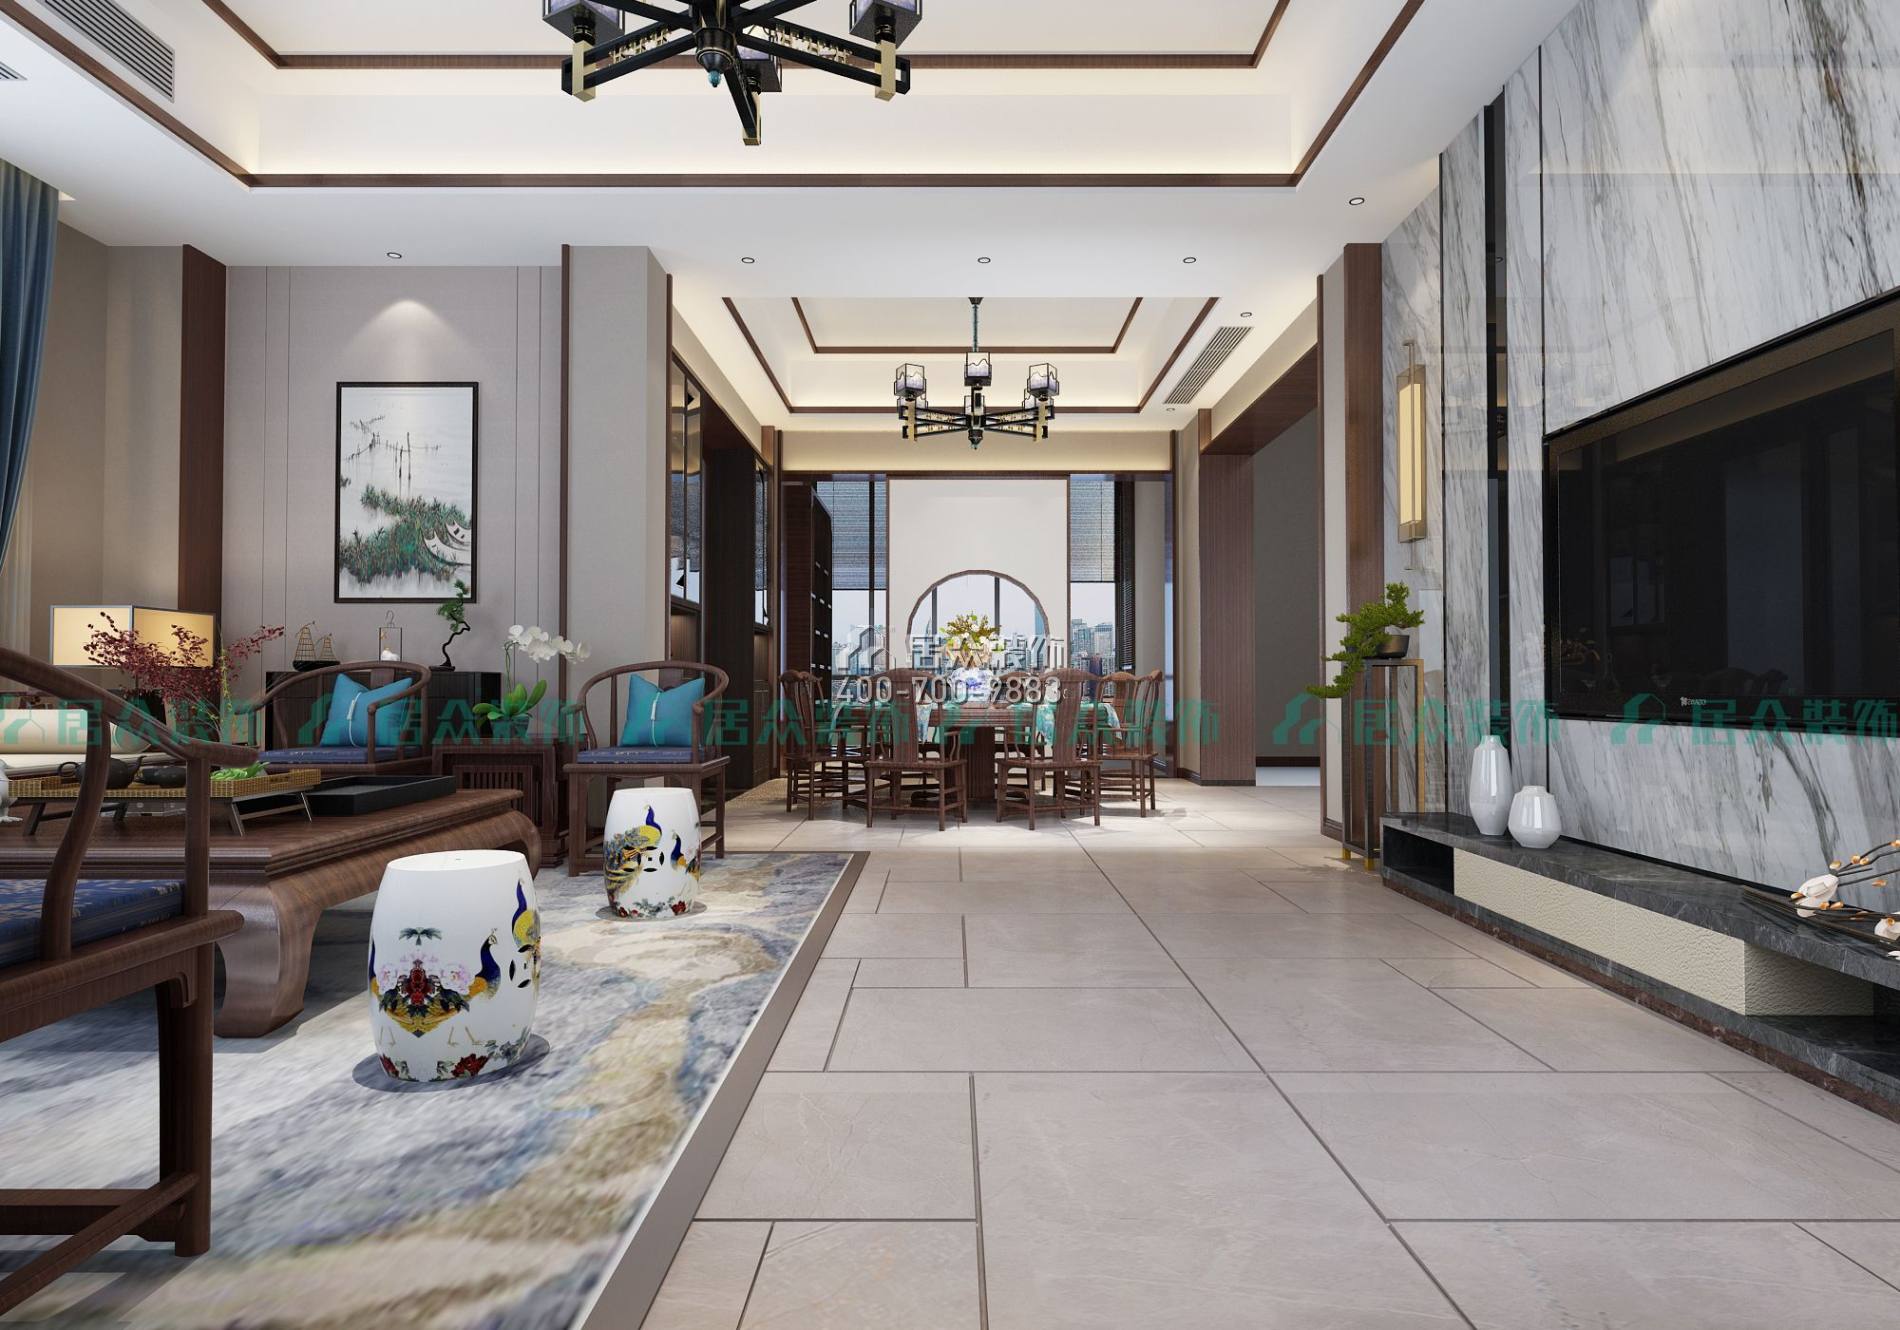 常德碧桂園260平方米中式風格別墅戶型客餐廳一體裝修效果圖